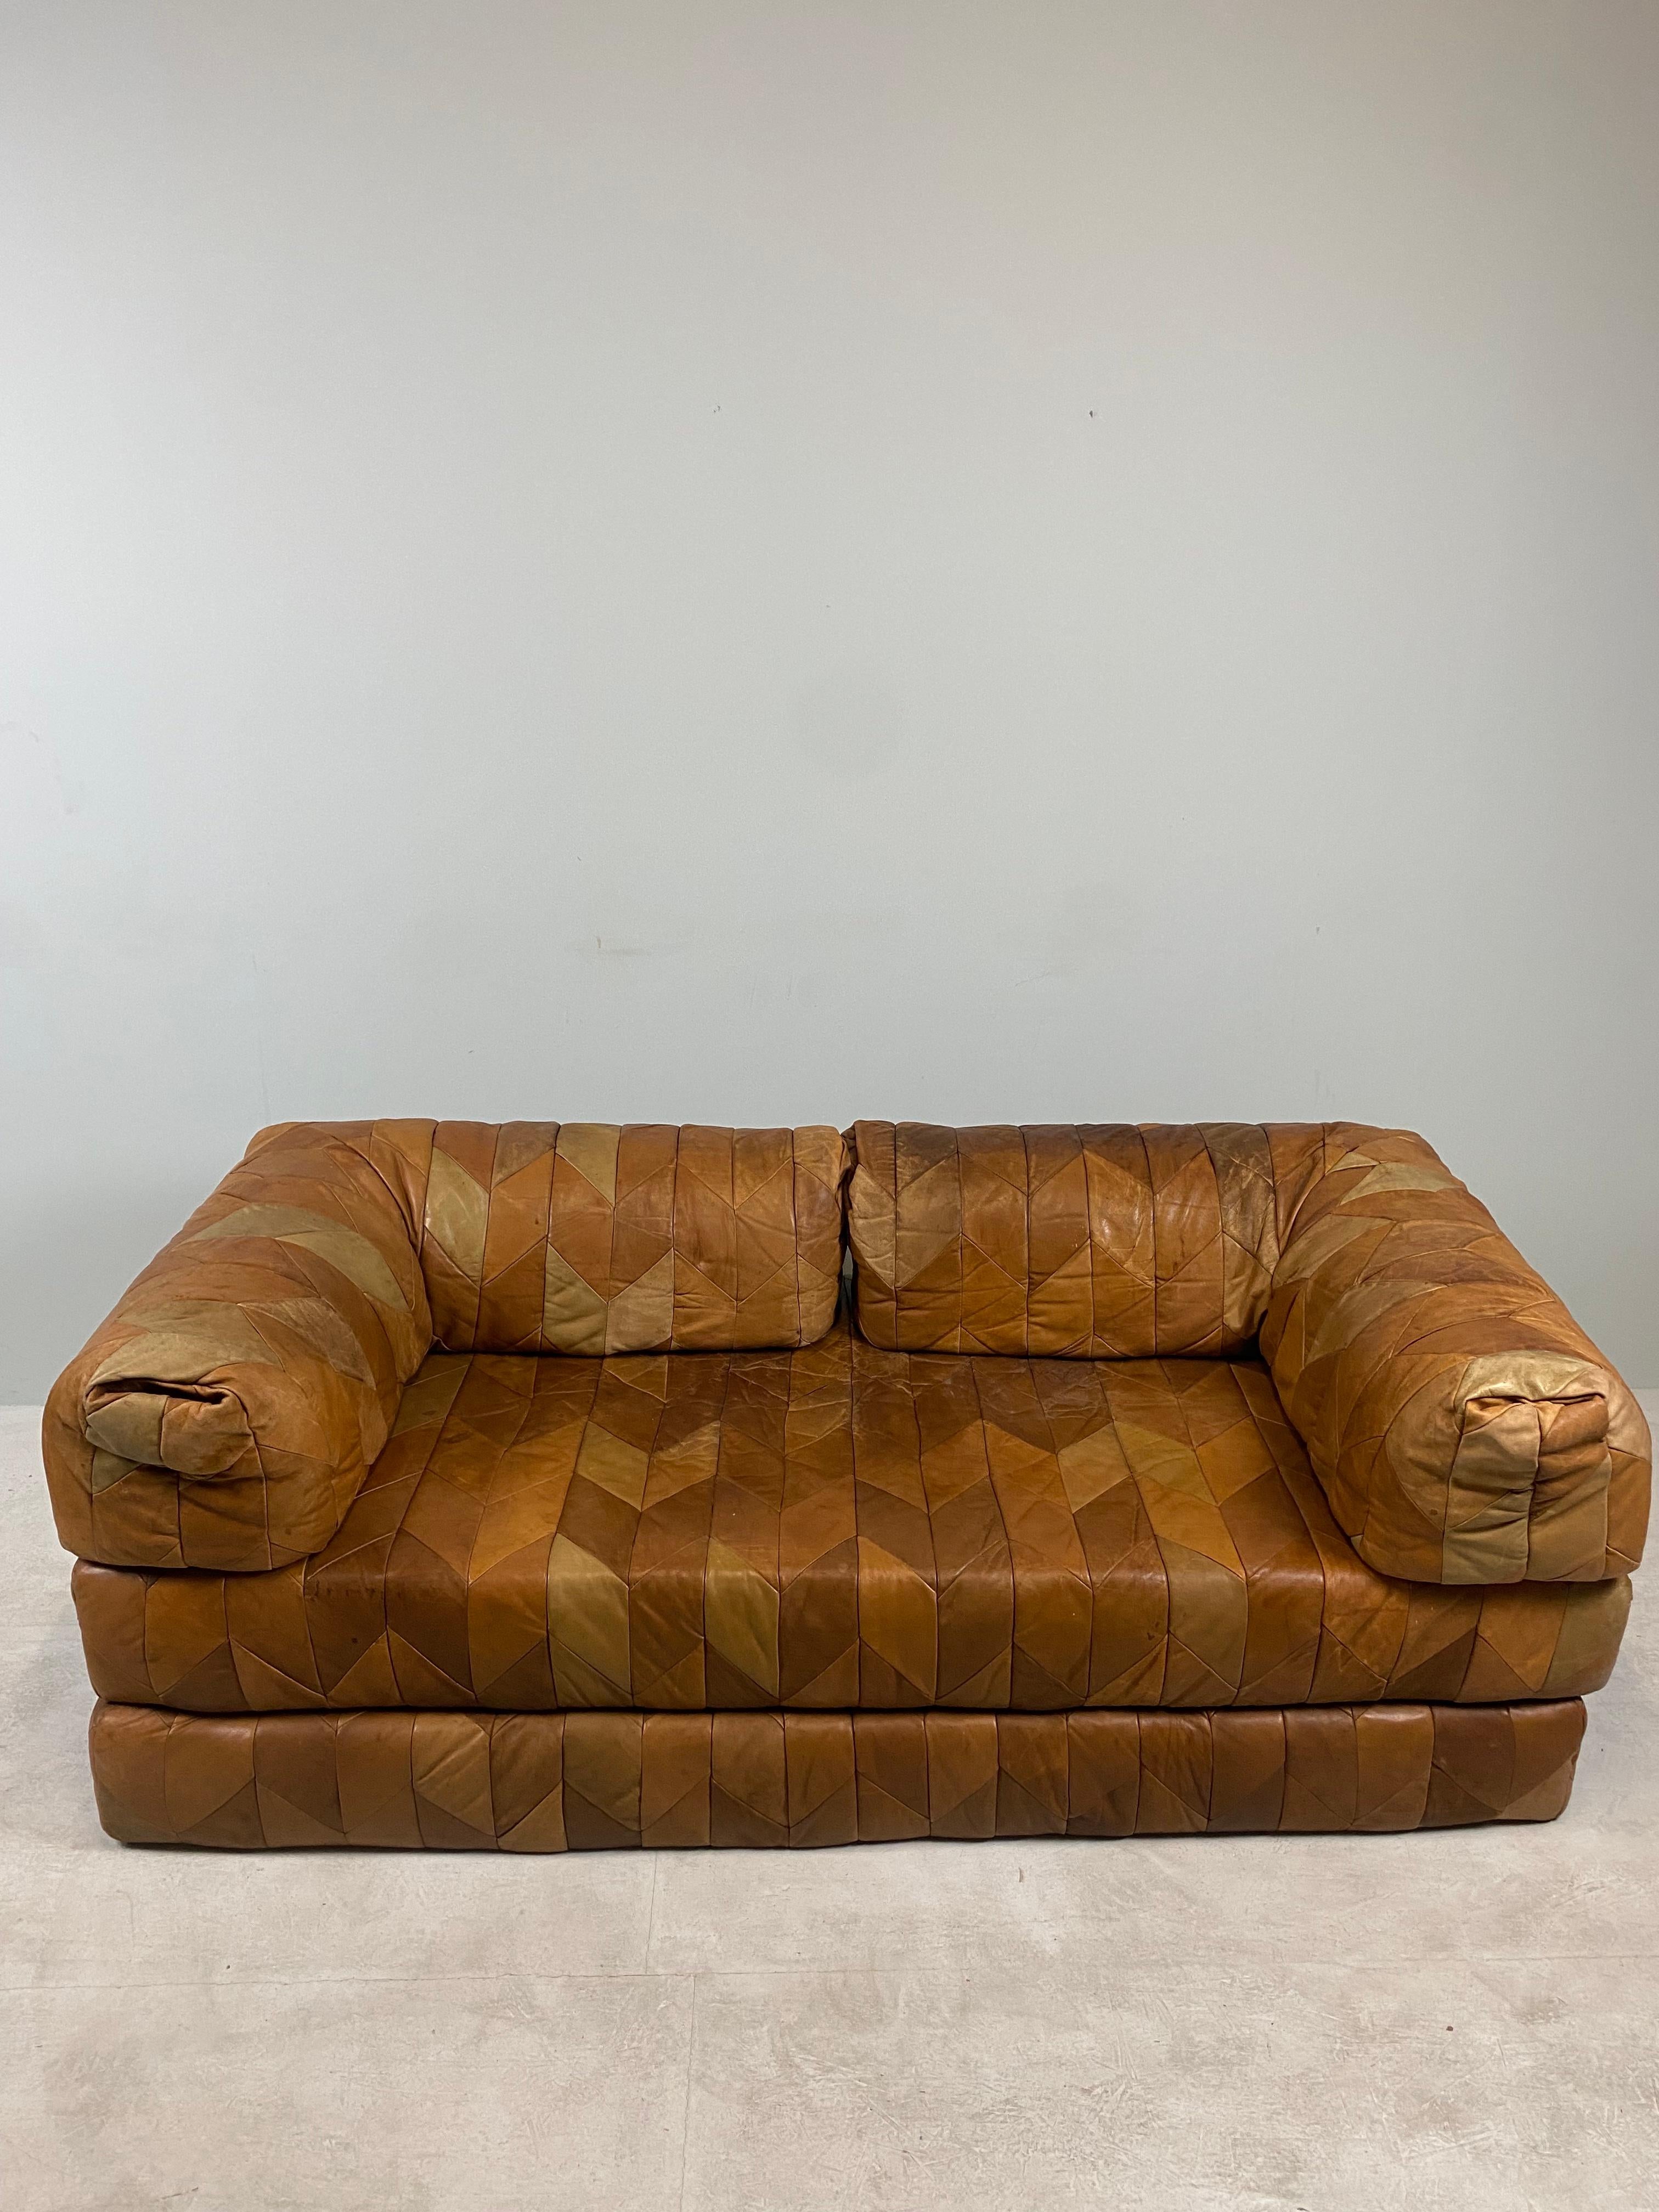 Magnifique et rare canapé en patchwork de cuir DS88 conçu par De Sede Team, Suisse 1970. Le canapé est unique grâce aux différentes parties en cuir. Convient également comme canapé gigogne sur lequel vous pouvez dormir à merveille. Le canapé est en